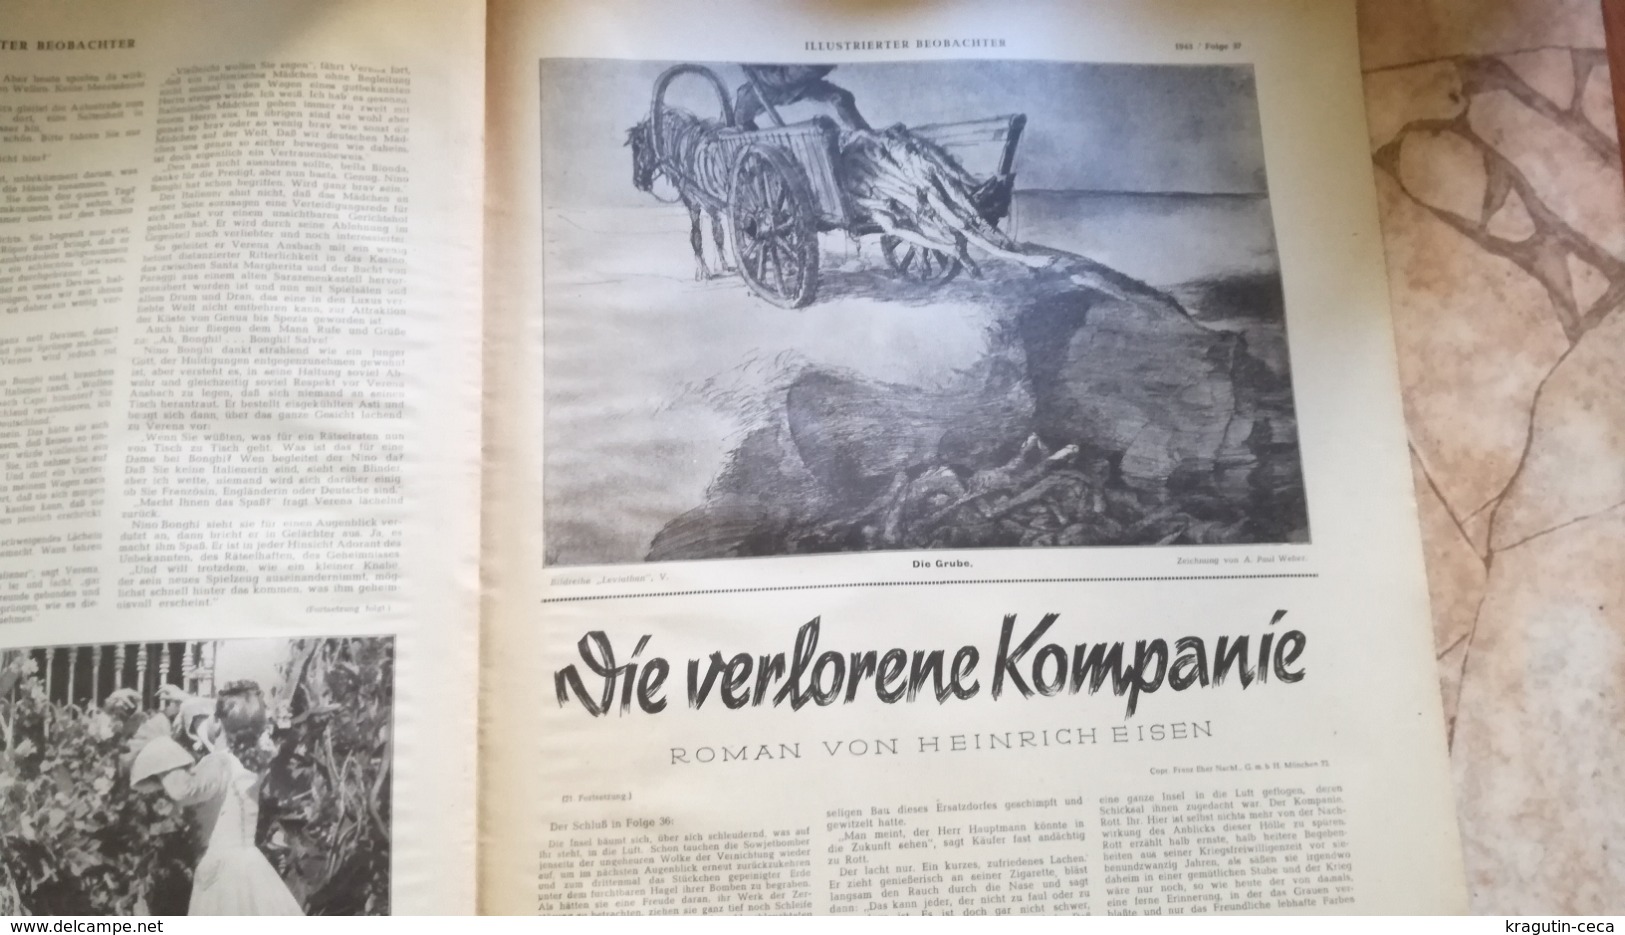 1943 WWII WW2 illustrierter beobachter Zeitung NAZI GERMANY ARMY MAGAZINE MILITARY DEUTSCHE MACHINE GUN HELMET MEDAL